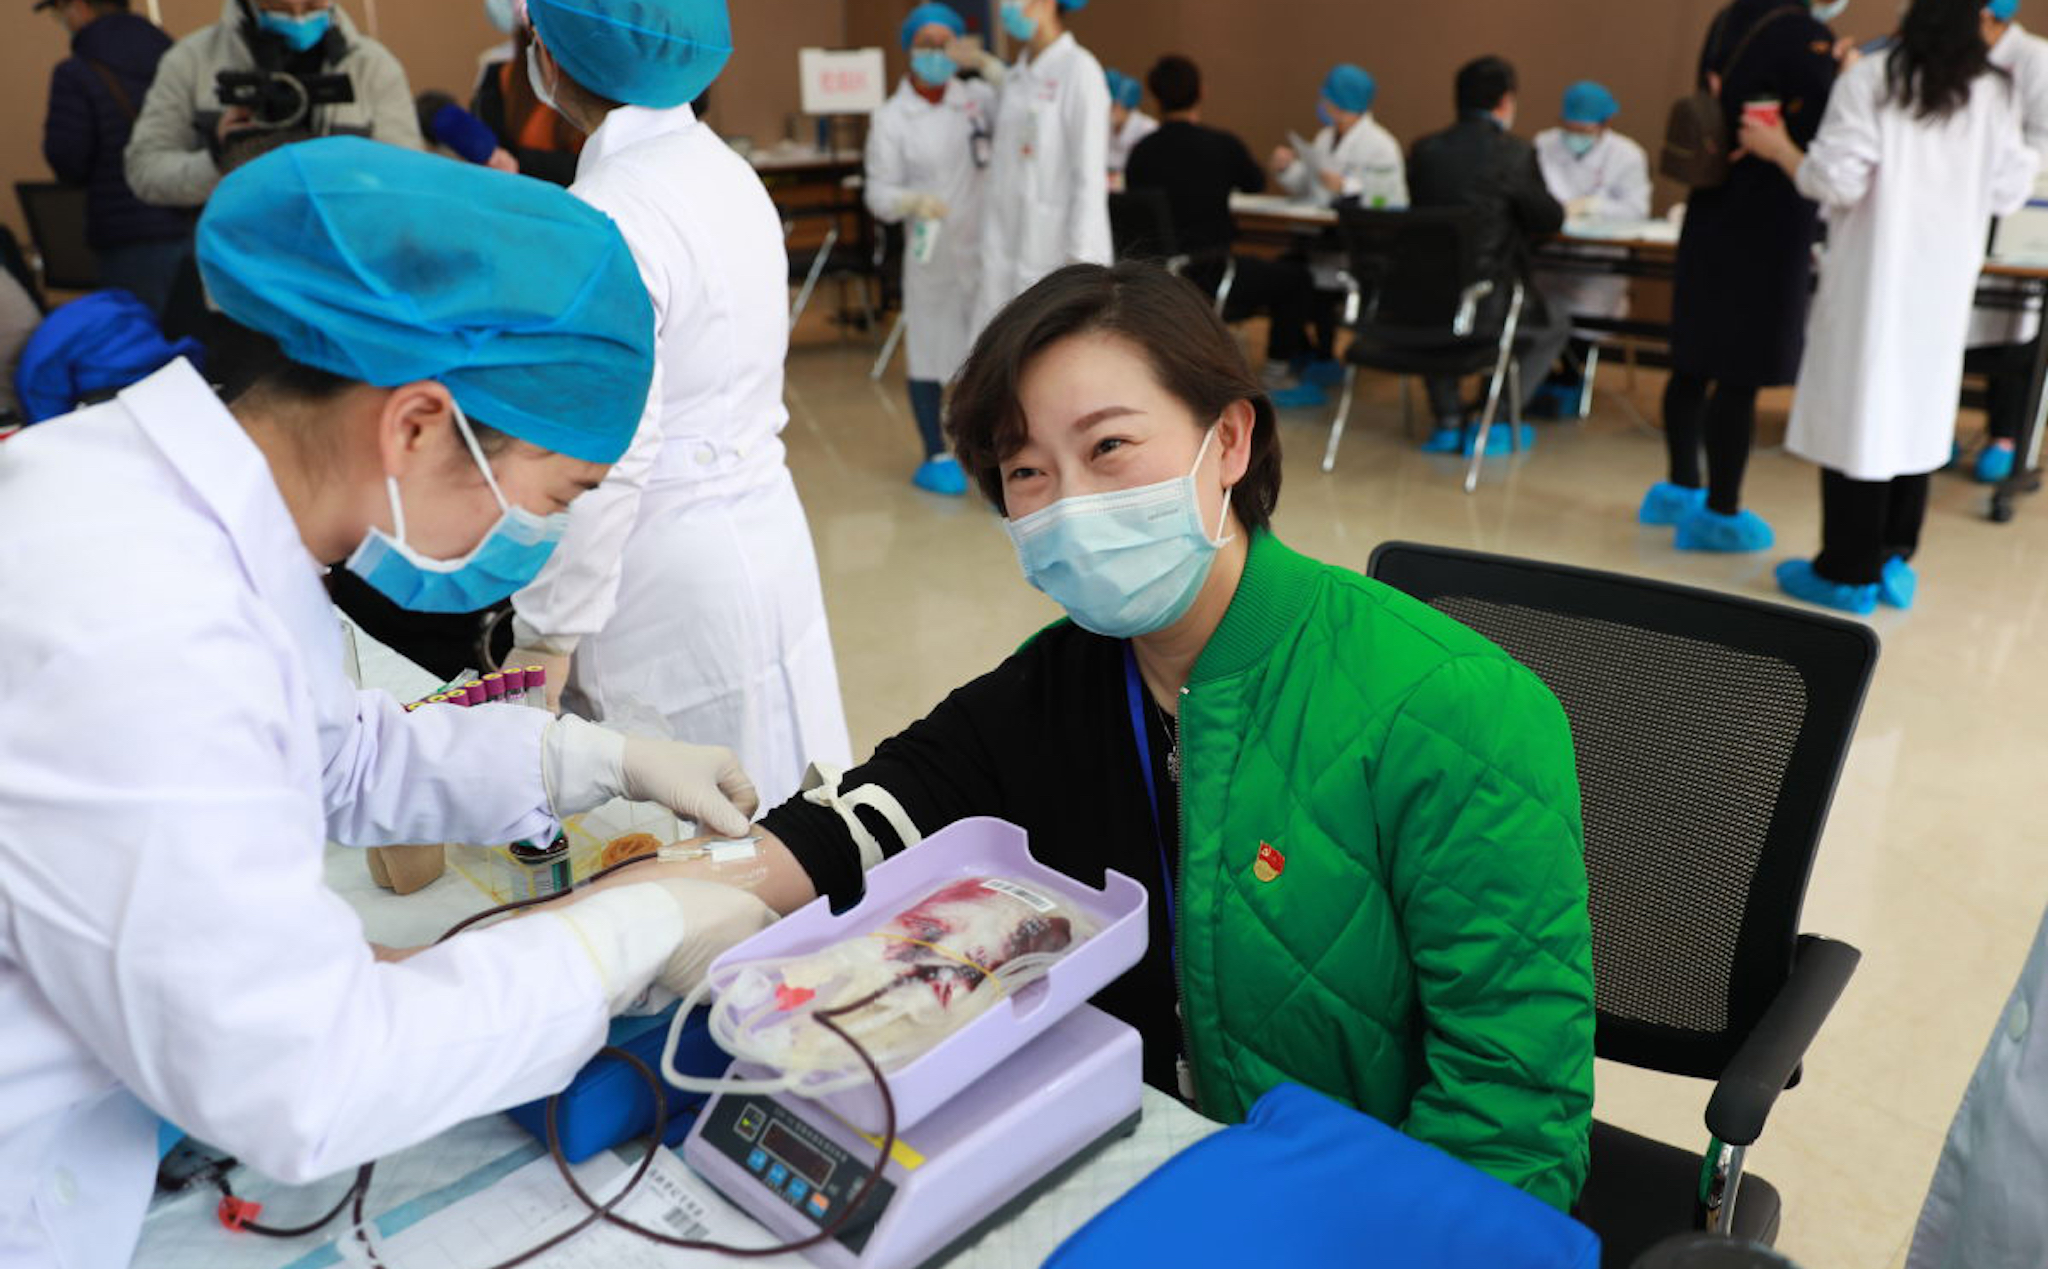 Để điều tra nguồn gốc COVID-19, Trung Quốc sẽ xét nghiệm hàng chục nghìn mẫu máu ở Vũ Hán